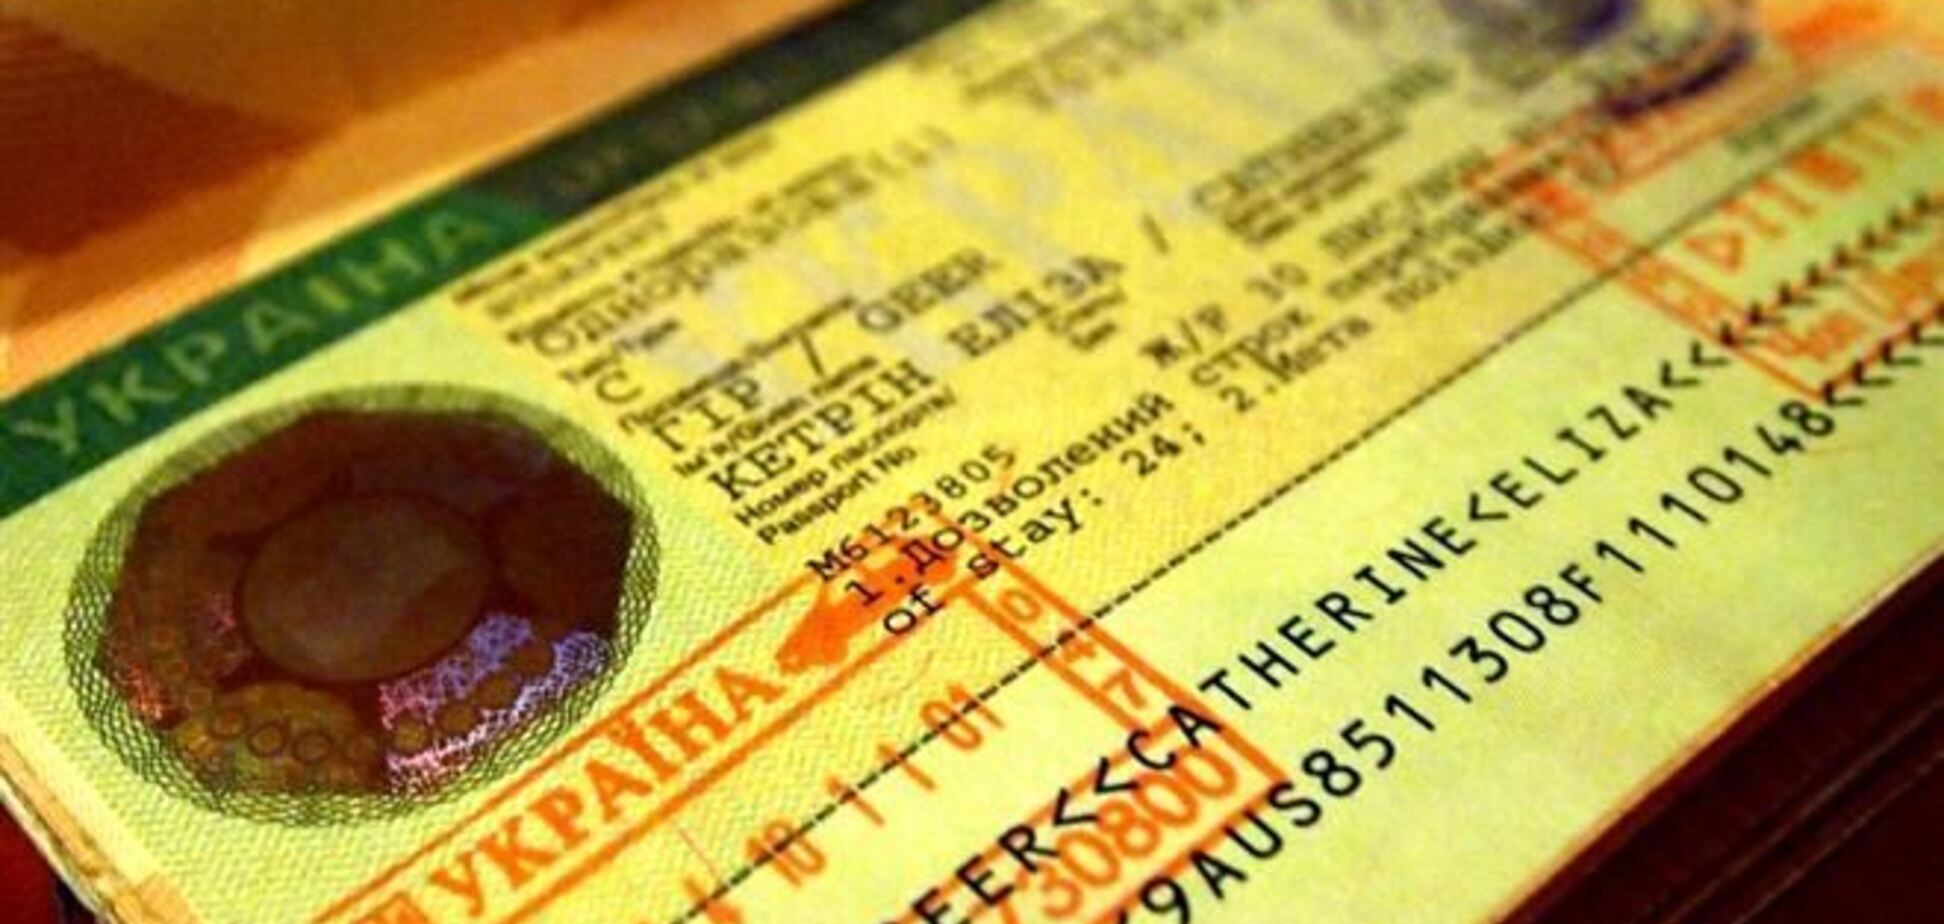 МИД: въезд в Крым без украинской визы будет незаконным